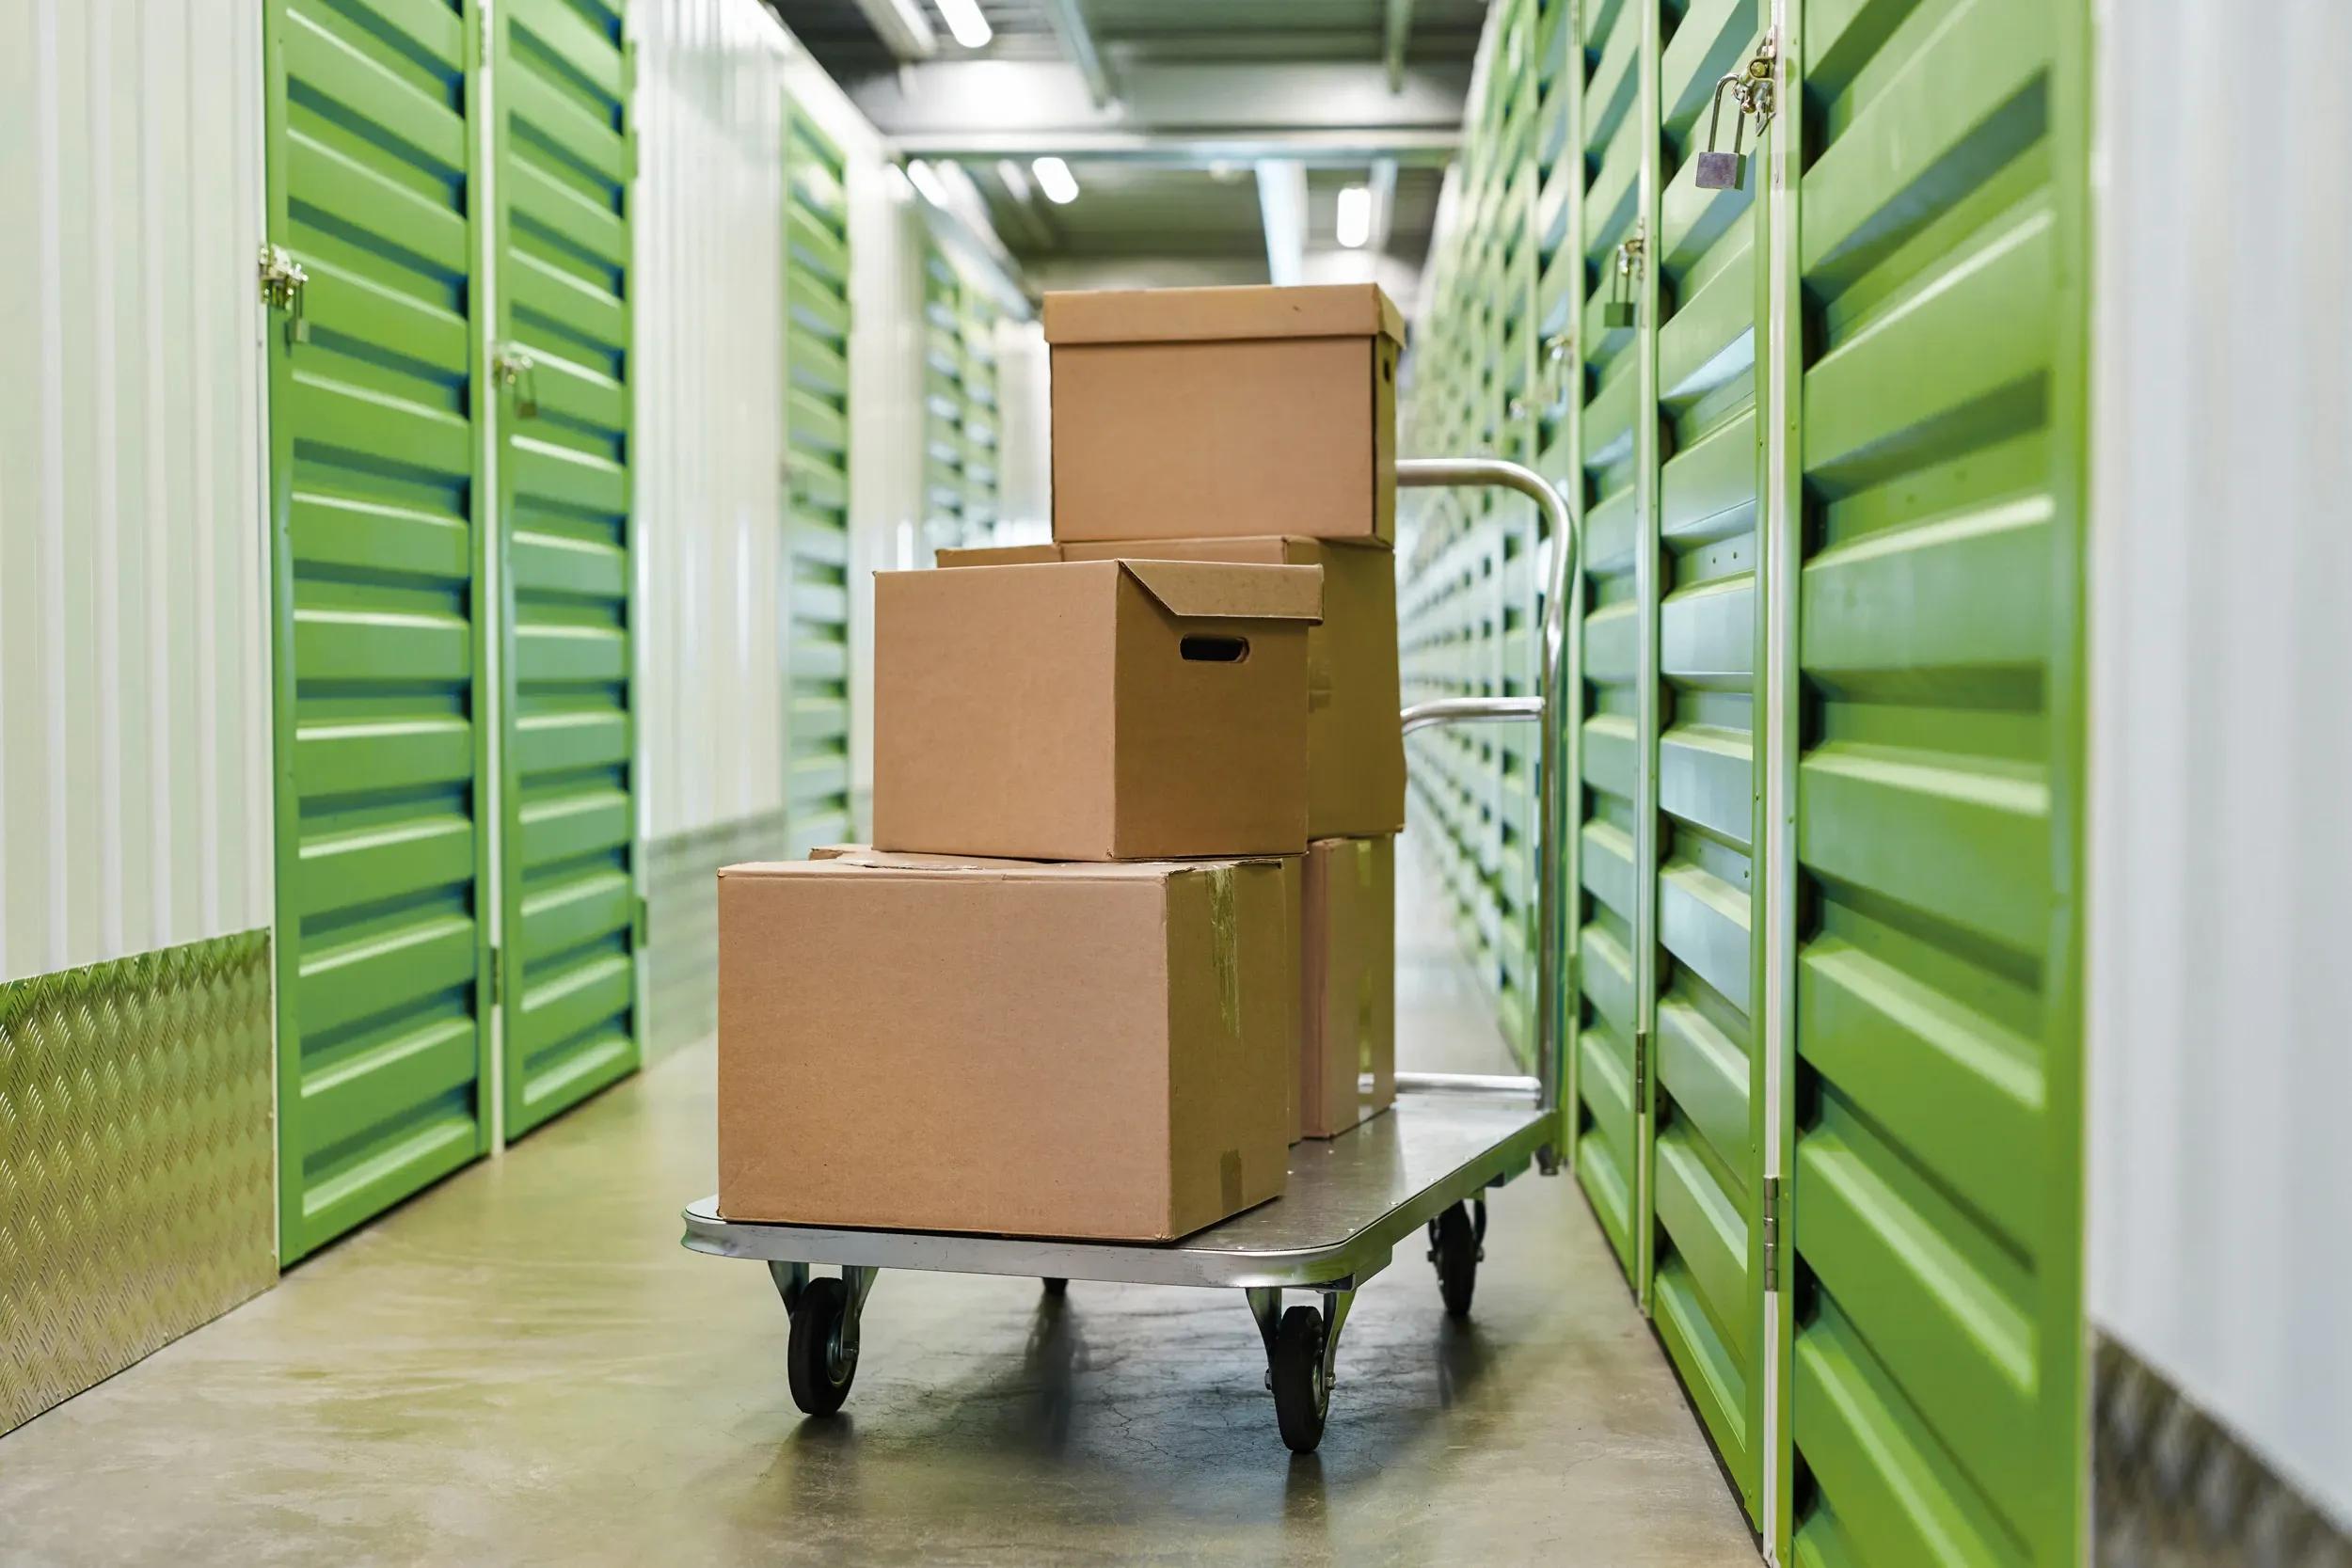 Magasinering av organiserade lådor på vagn i förrådslokal med gröna dörrar och lås - Flexibel och säker förvaring med våra magasinerings- och förrådstjänster.